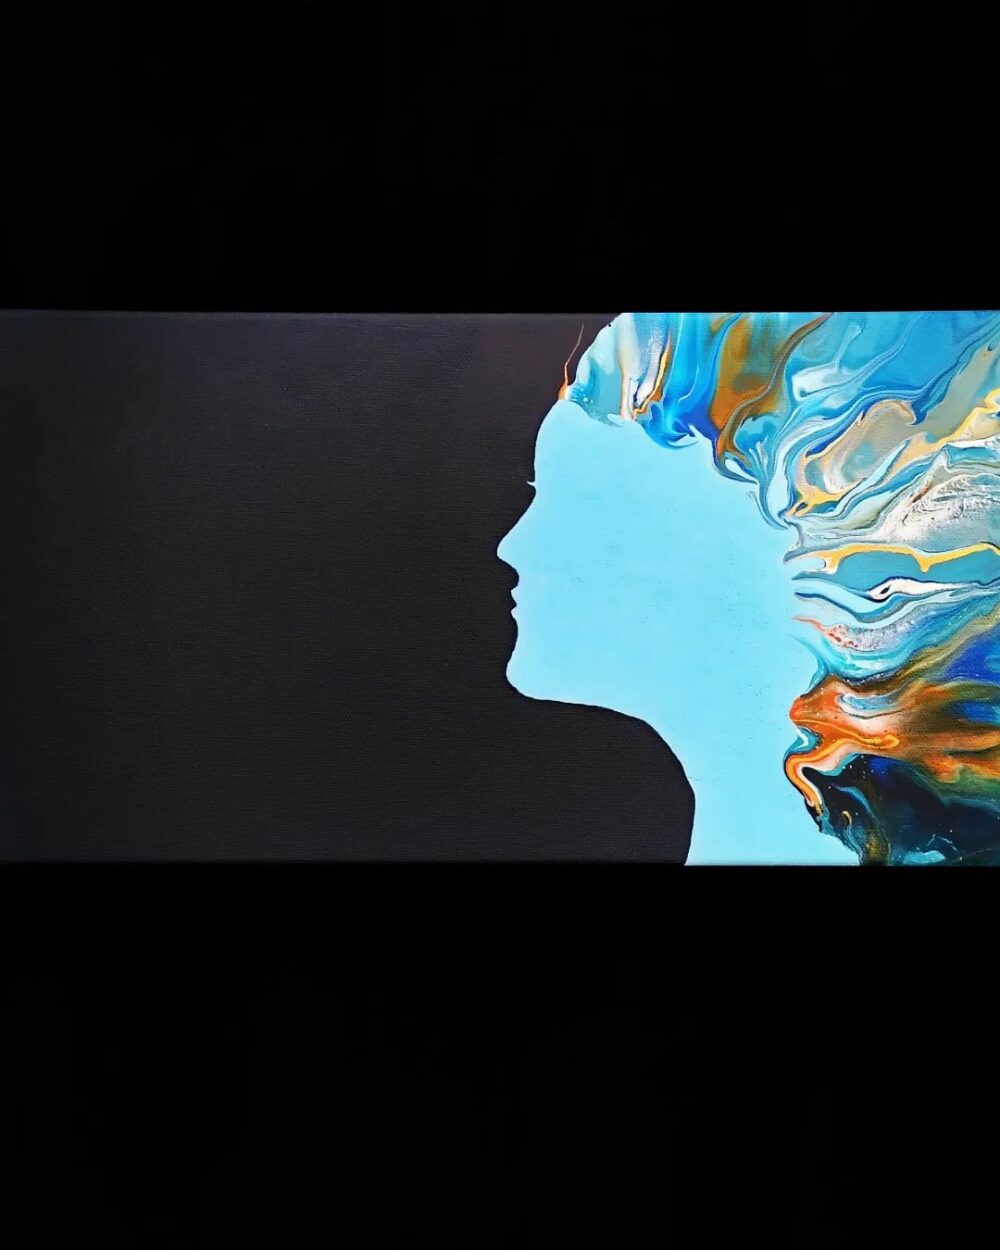 Visage de femme avec des cheveux multicolores dans le vent